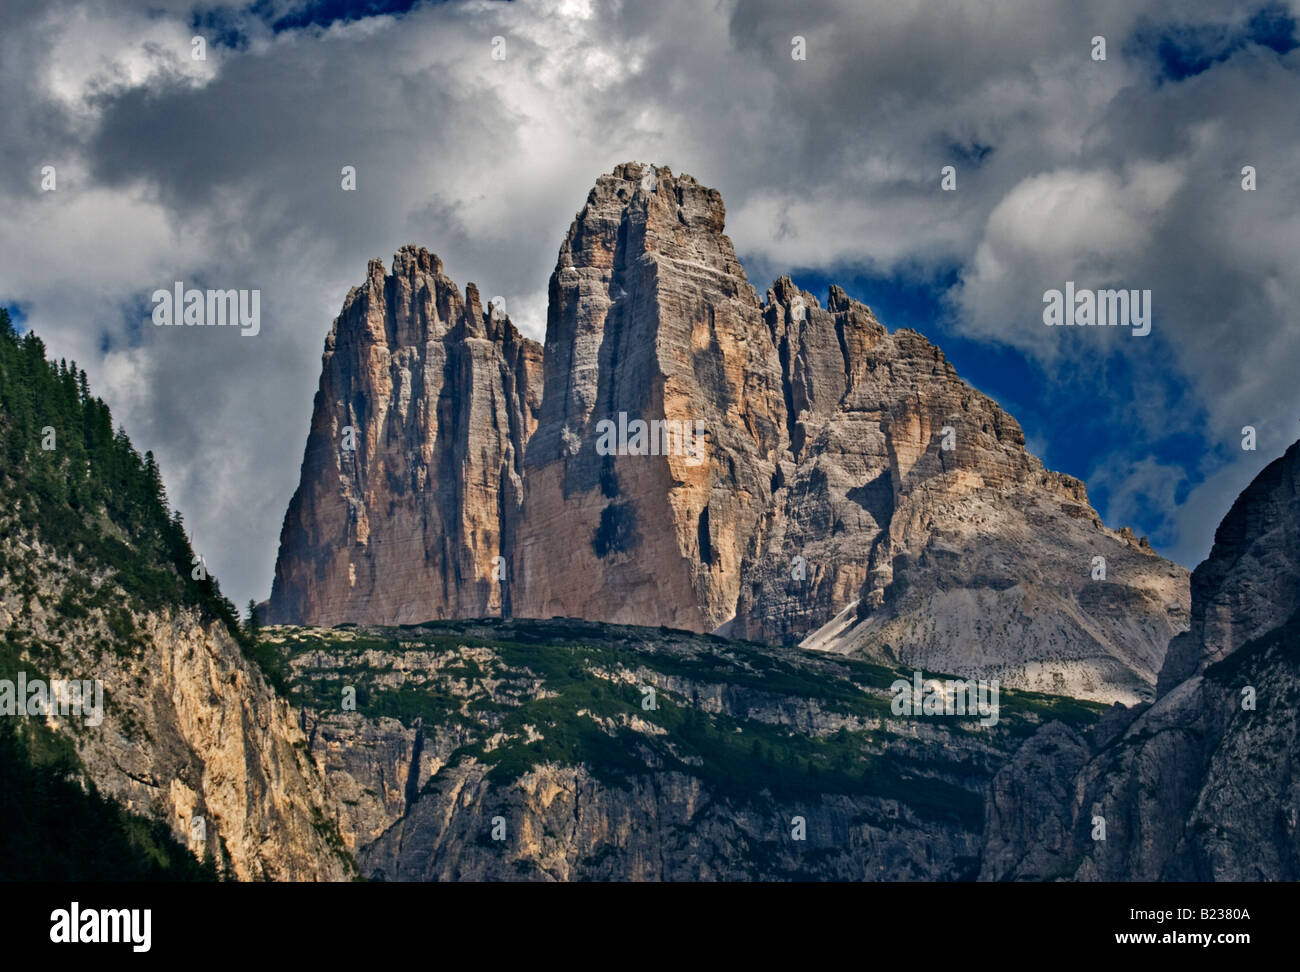 North Face of the Tre Cime di Lavaredo (Drei Zinnen), near Cortina d'Ampezzo, Dolomites, Italy Stock Photo